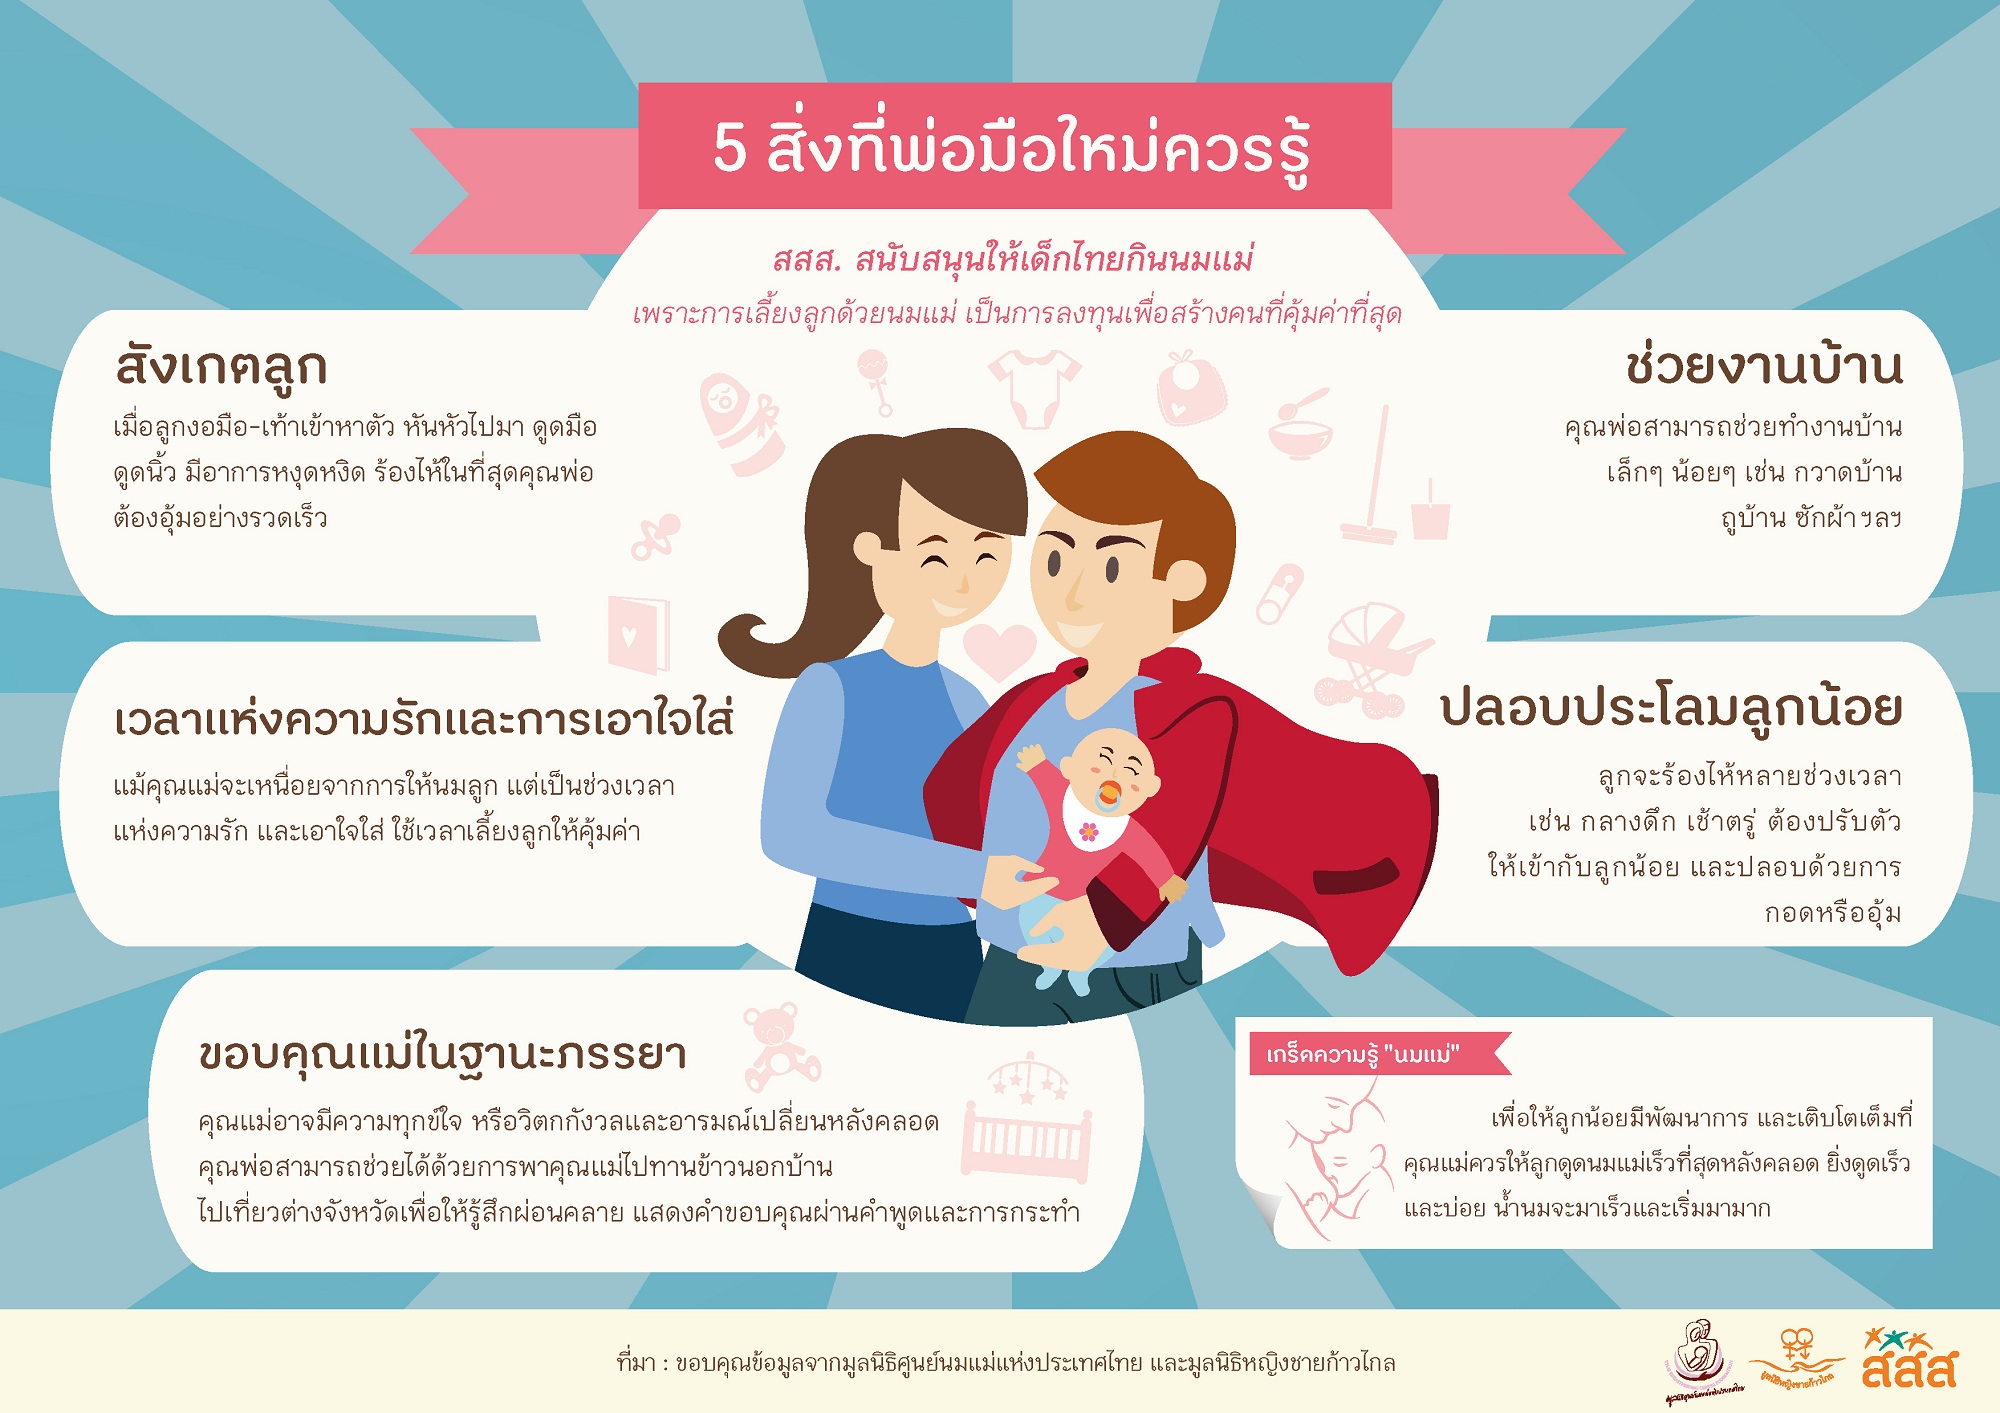 5 สิ่งที่พ่อมือใหม่ควรรู้ thaihealth